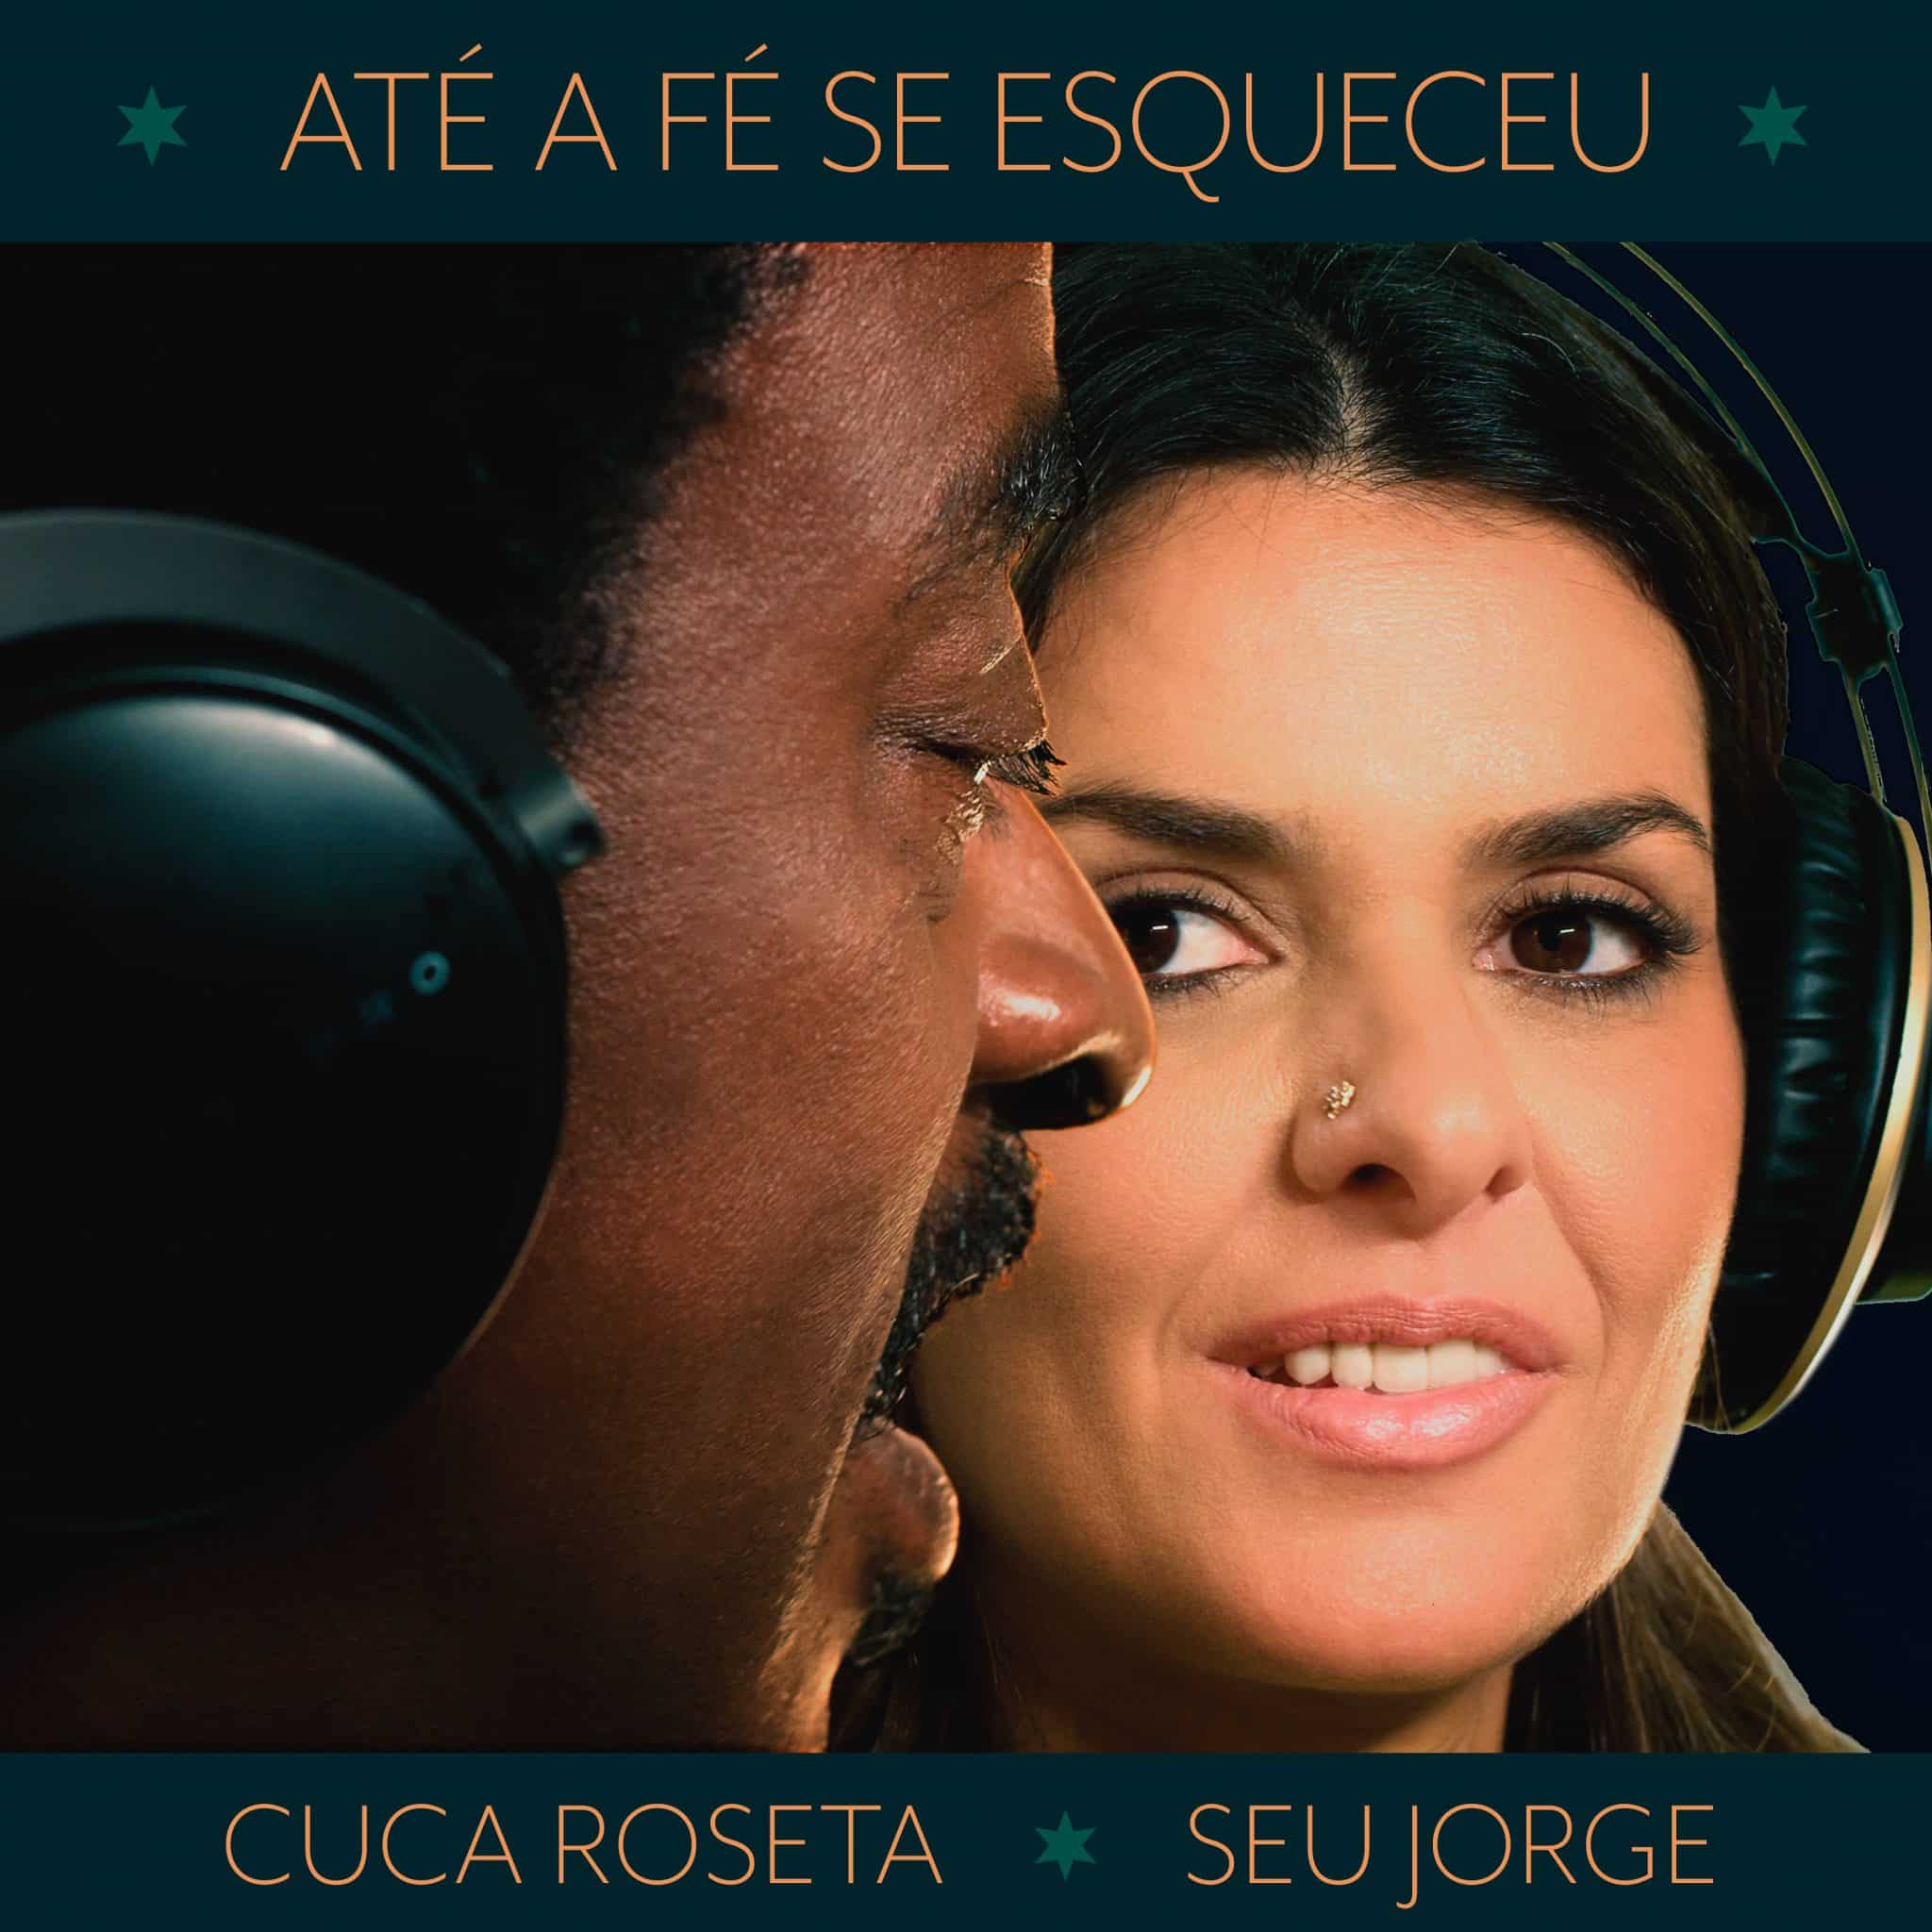 revistaprosaversoearte.com - Seu Jorge e a cantora portuguesa Cuca Roseta juntos, em single inédito